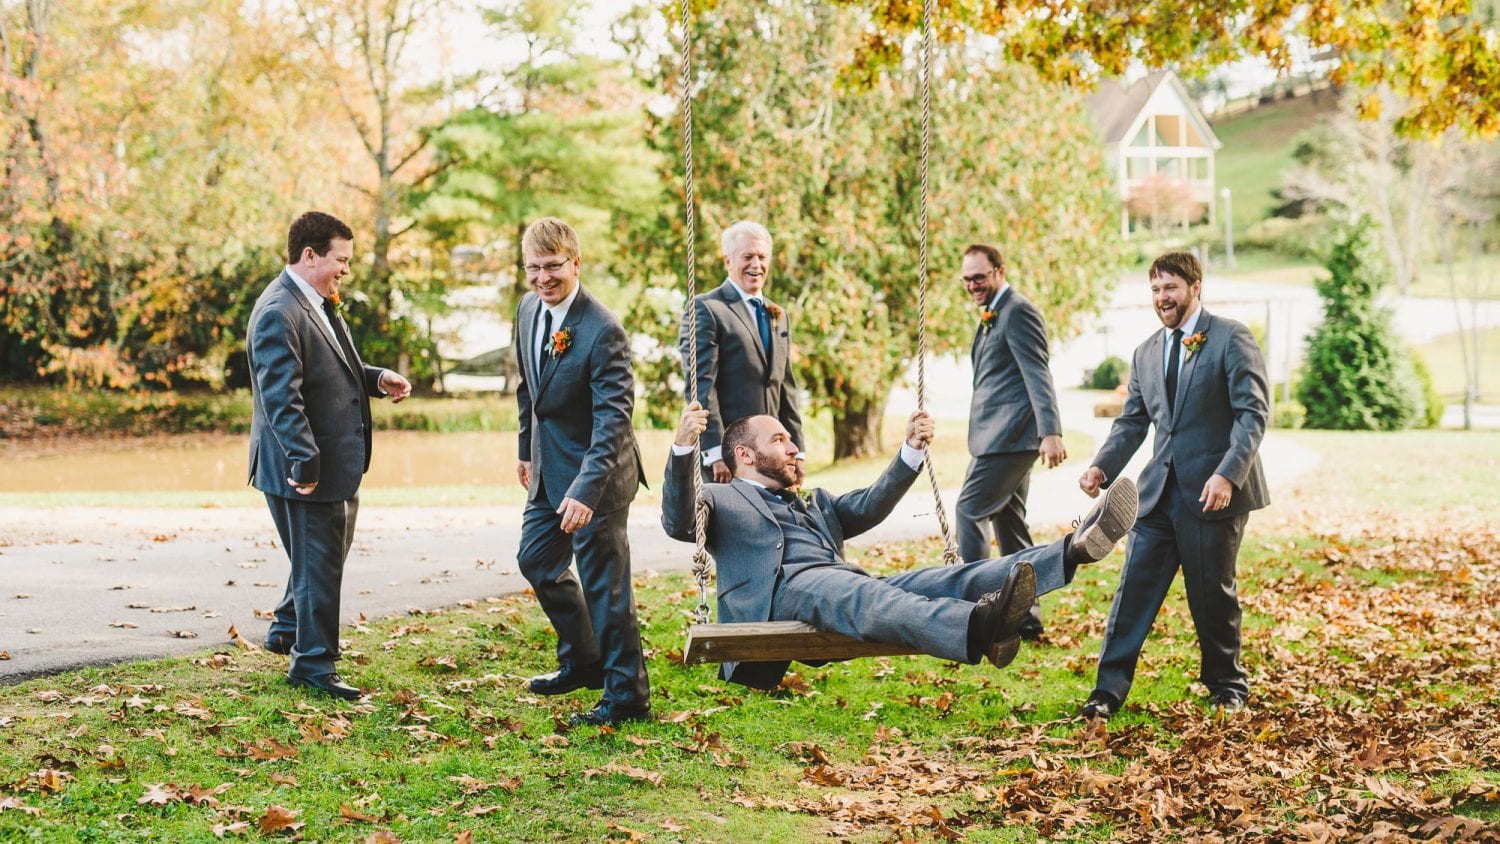 Swings in wedding photos